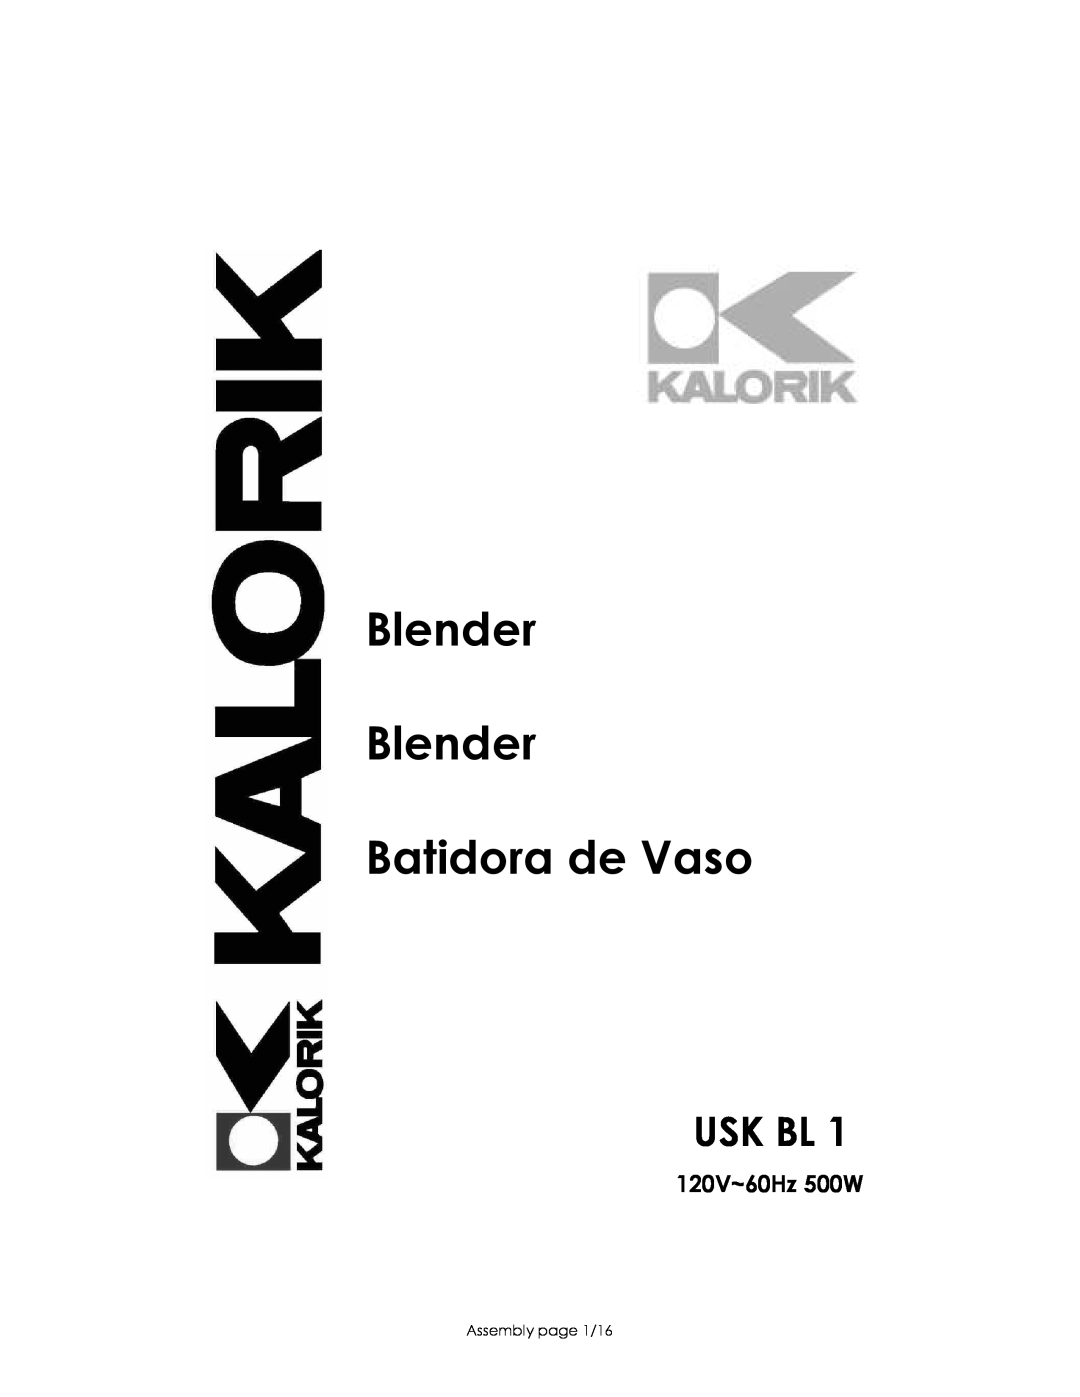 Kalorik USK BL 1 manual Usk Bl, 120V~60Hz 500W, Blender Blender Batidora de Vaso, Assembly page 1/16 